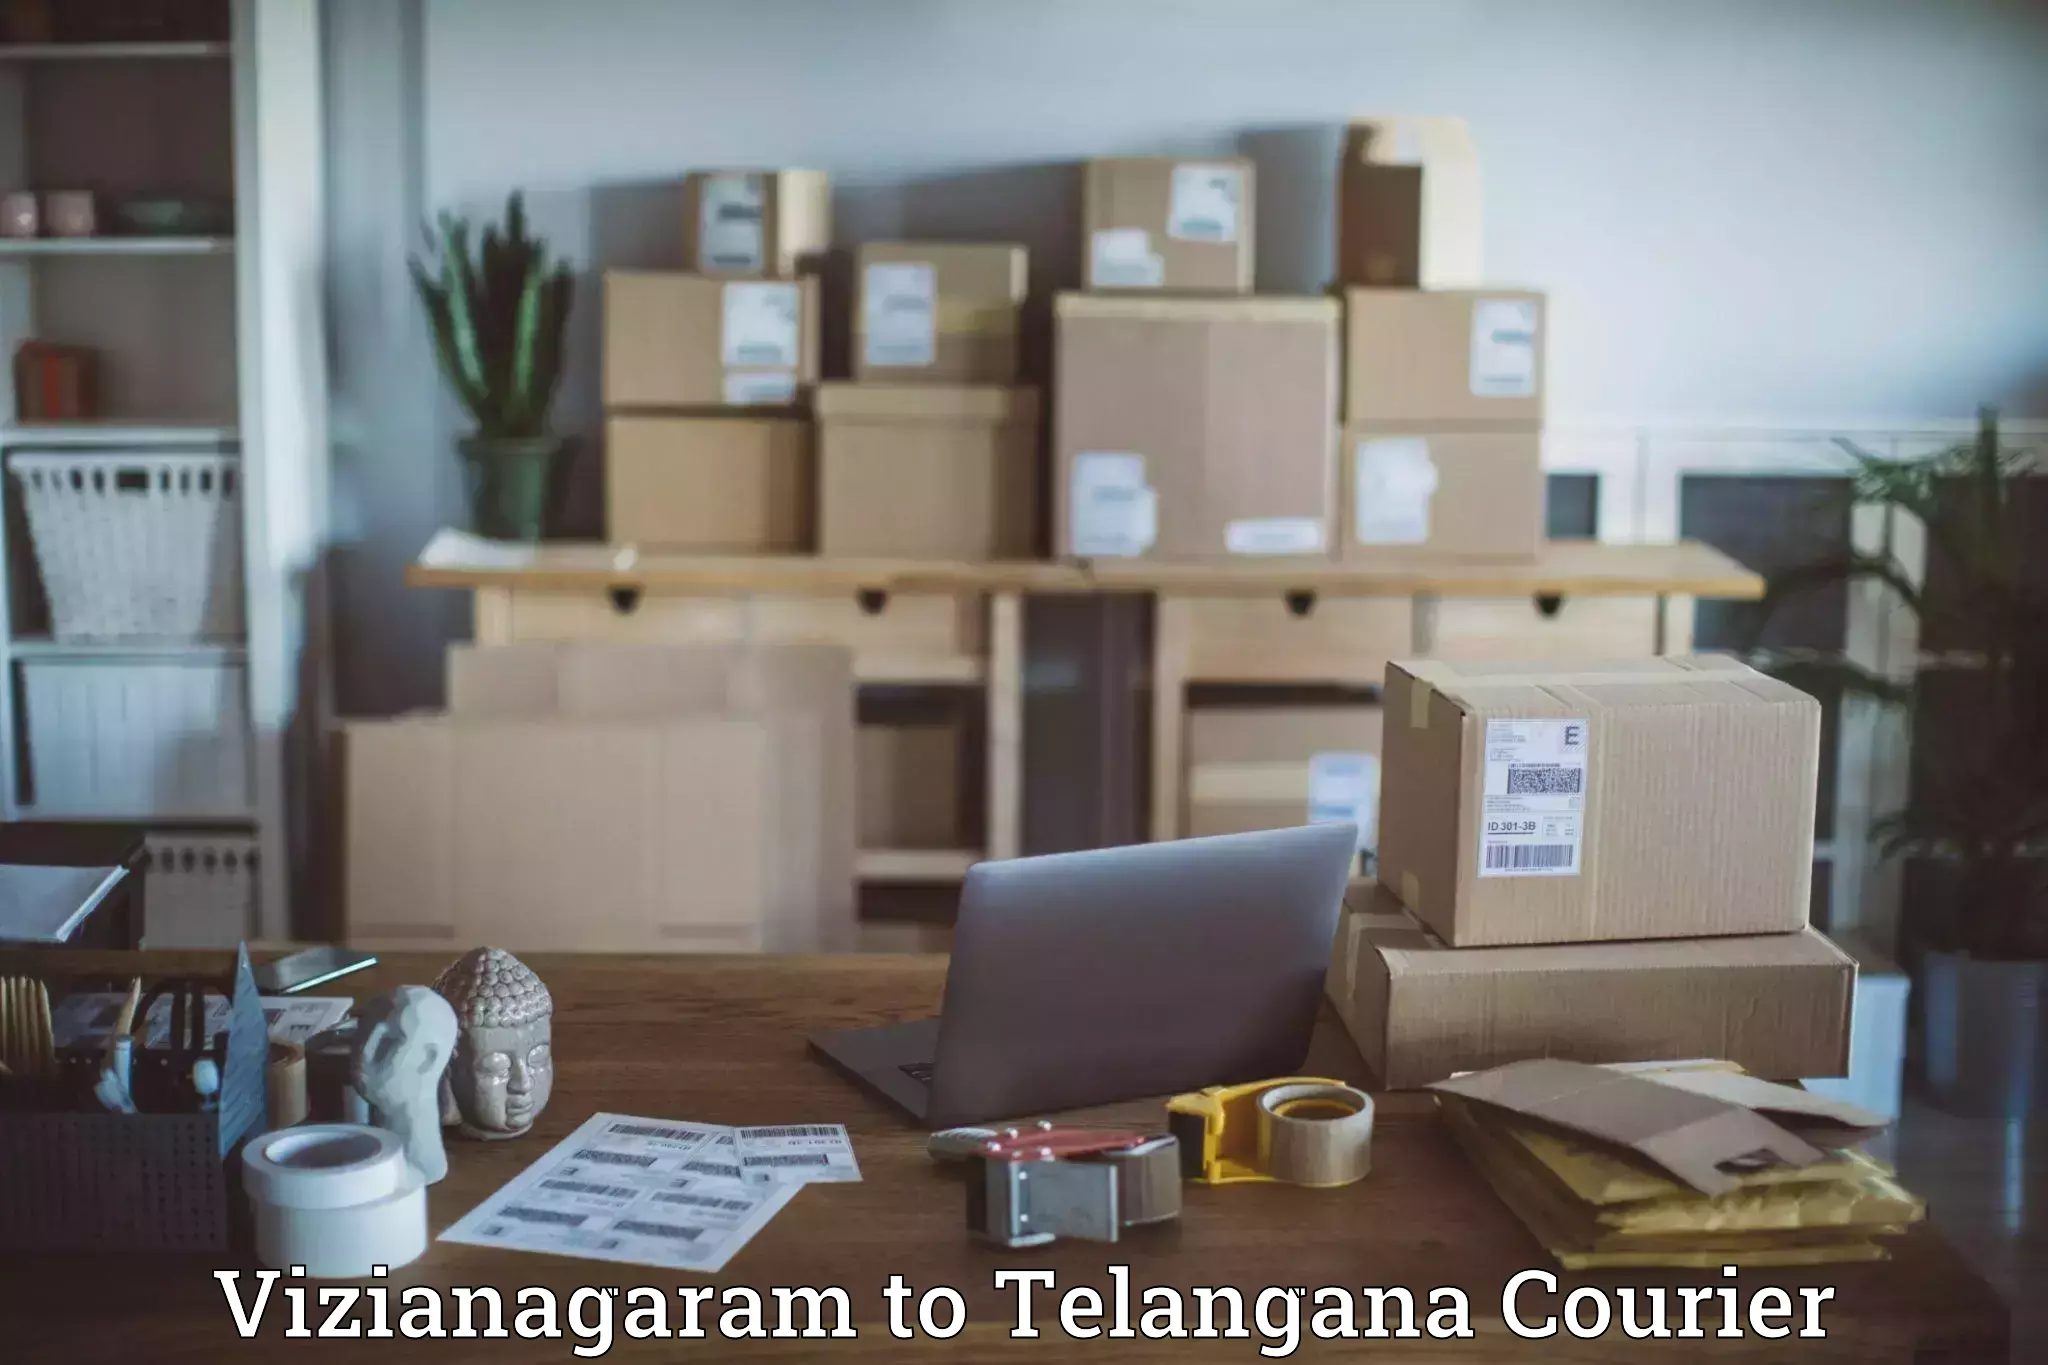 Efficient parcel tracking Vizianagaram to Rudrangi